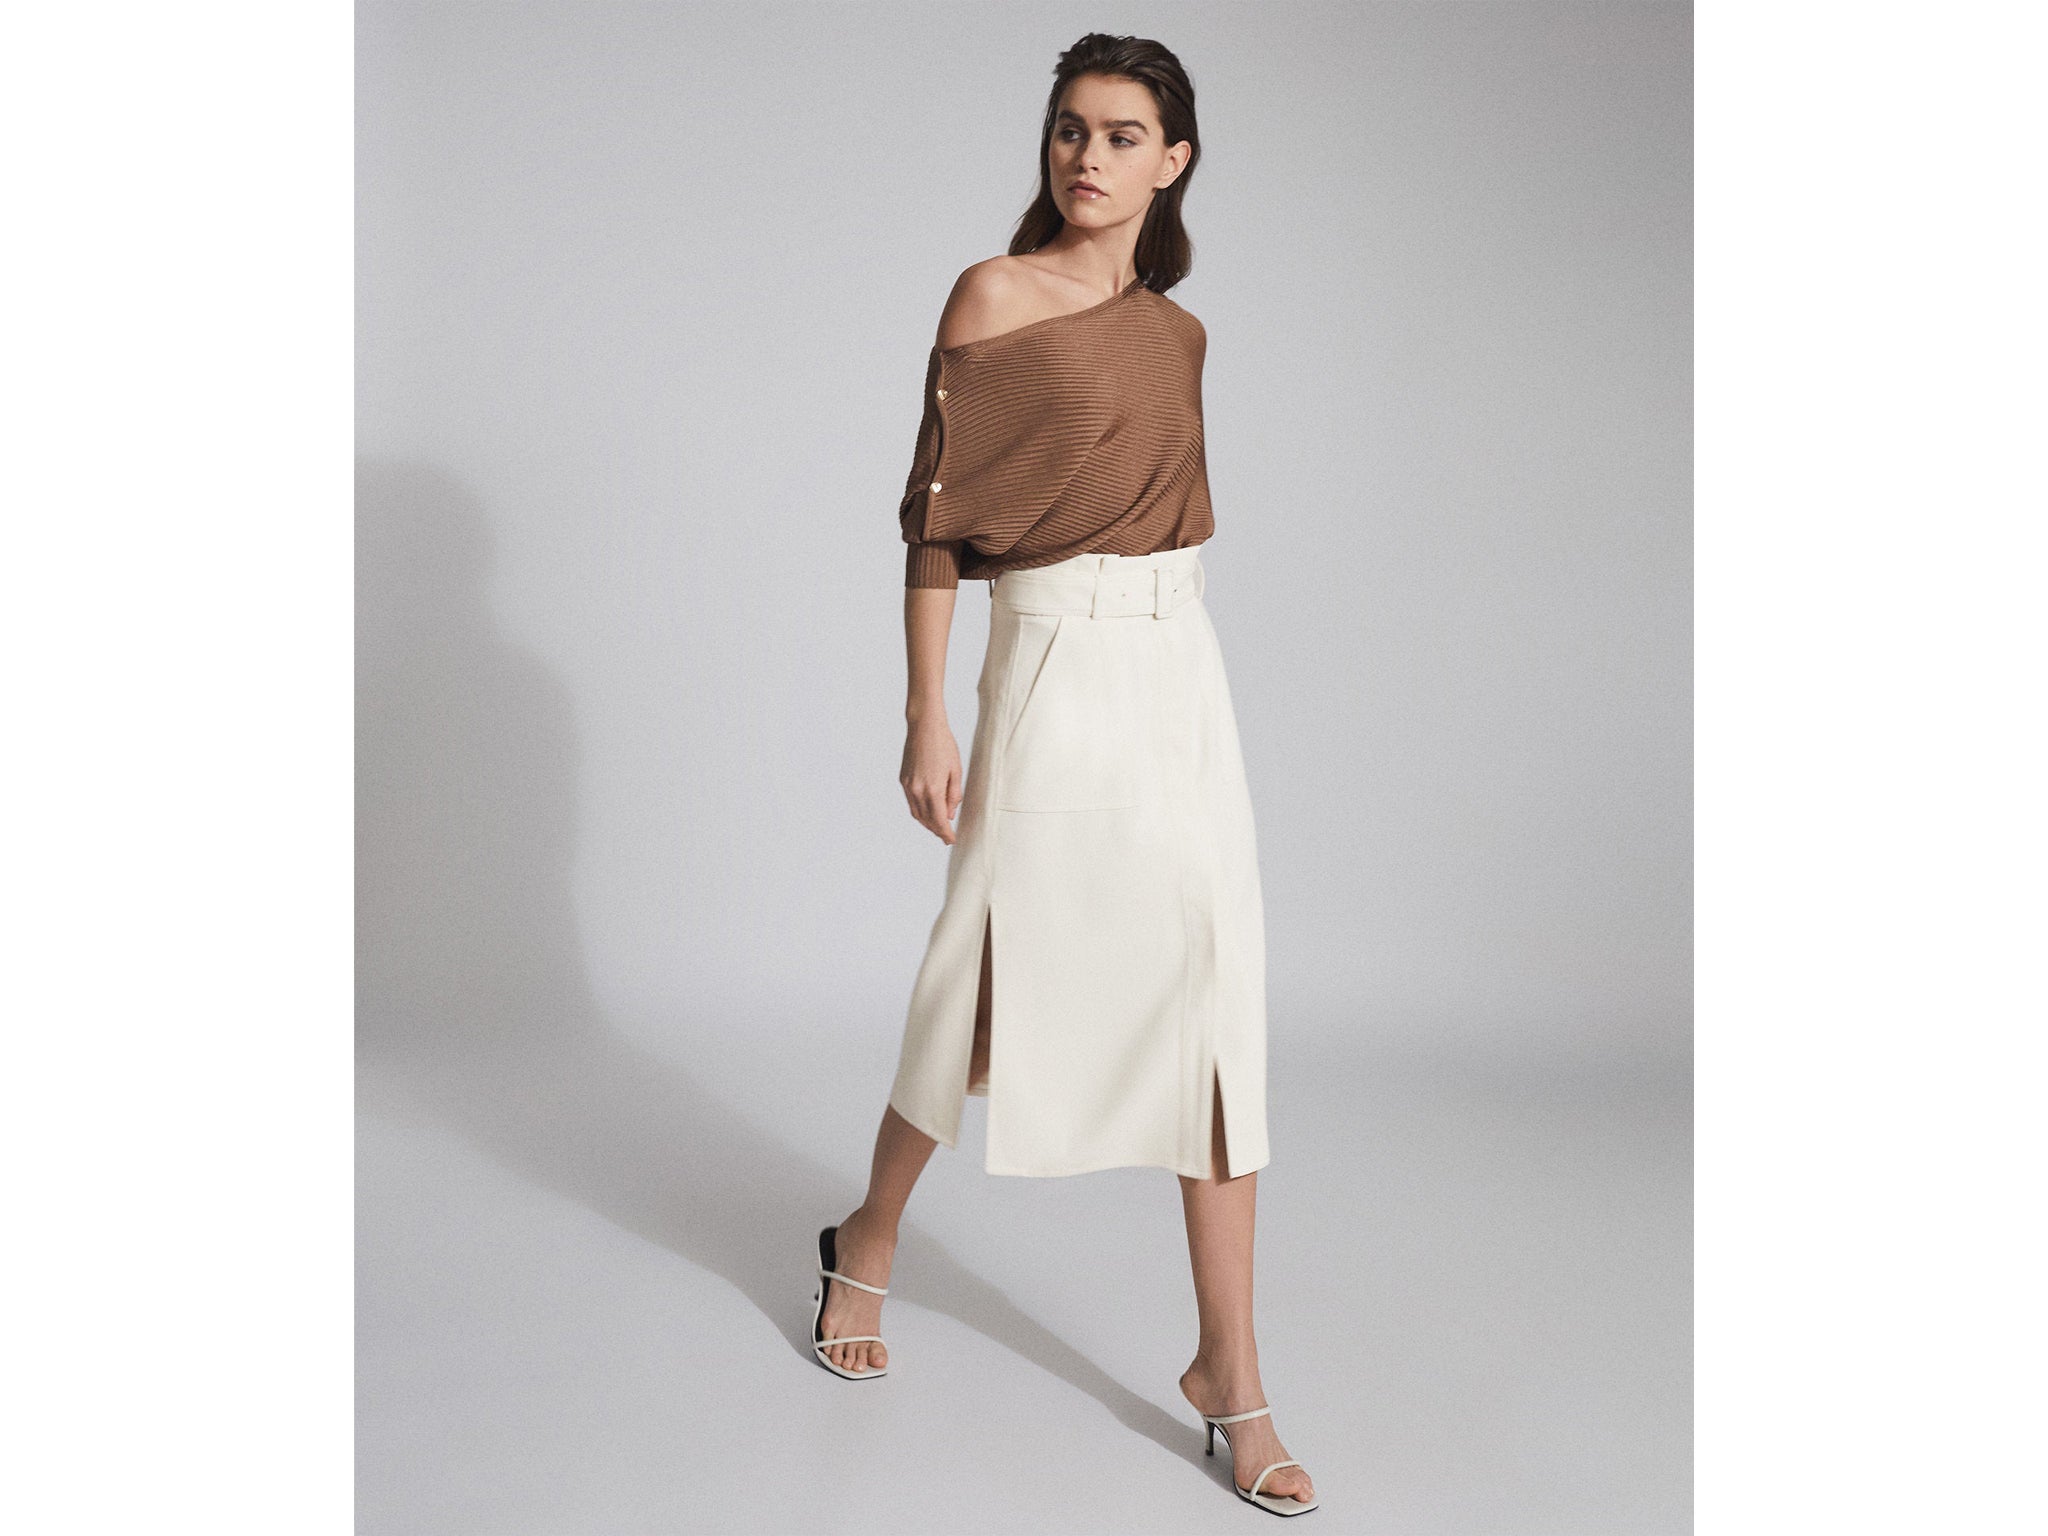 Best midi skirt 2021: Slit, satin and 